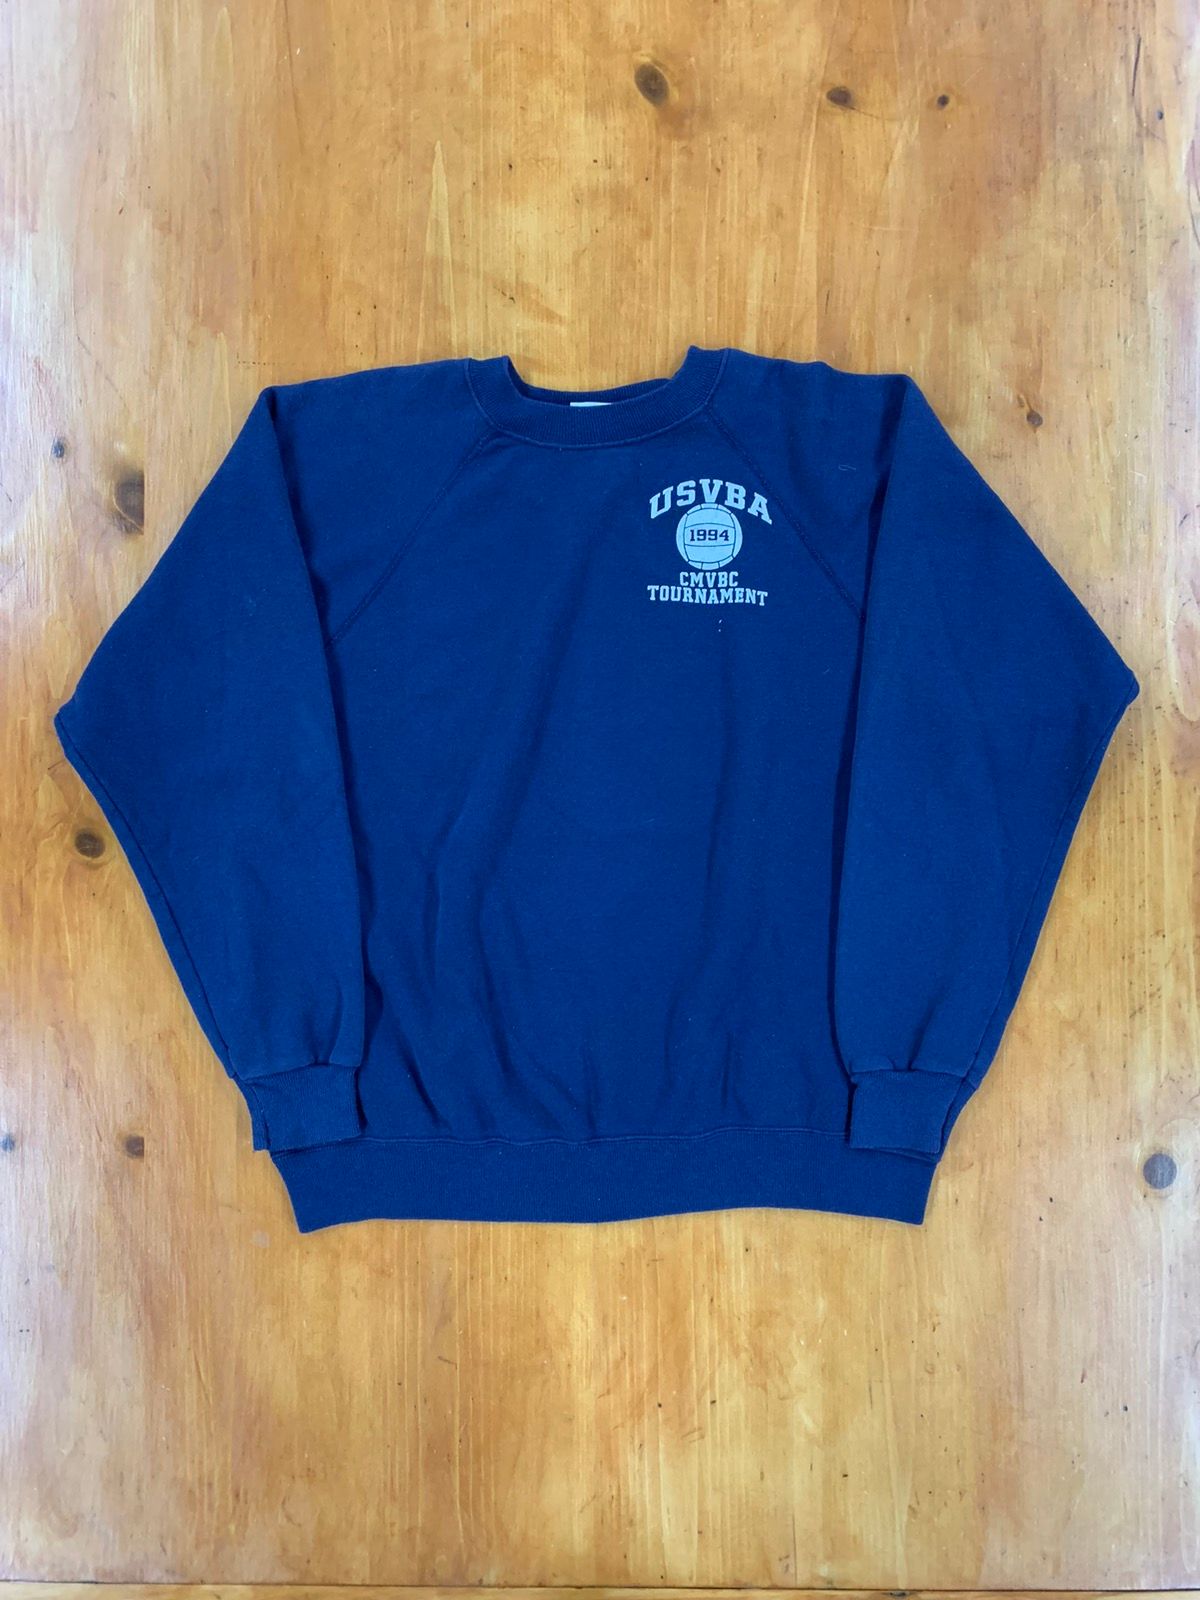 Vintage Vintage 1994 USVBA Volleyball Sweatshirt | Grailed